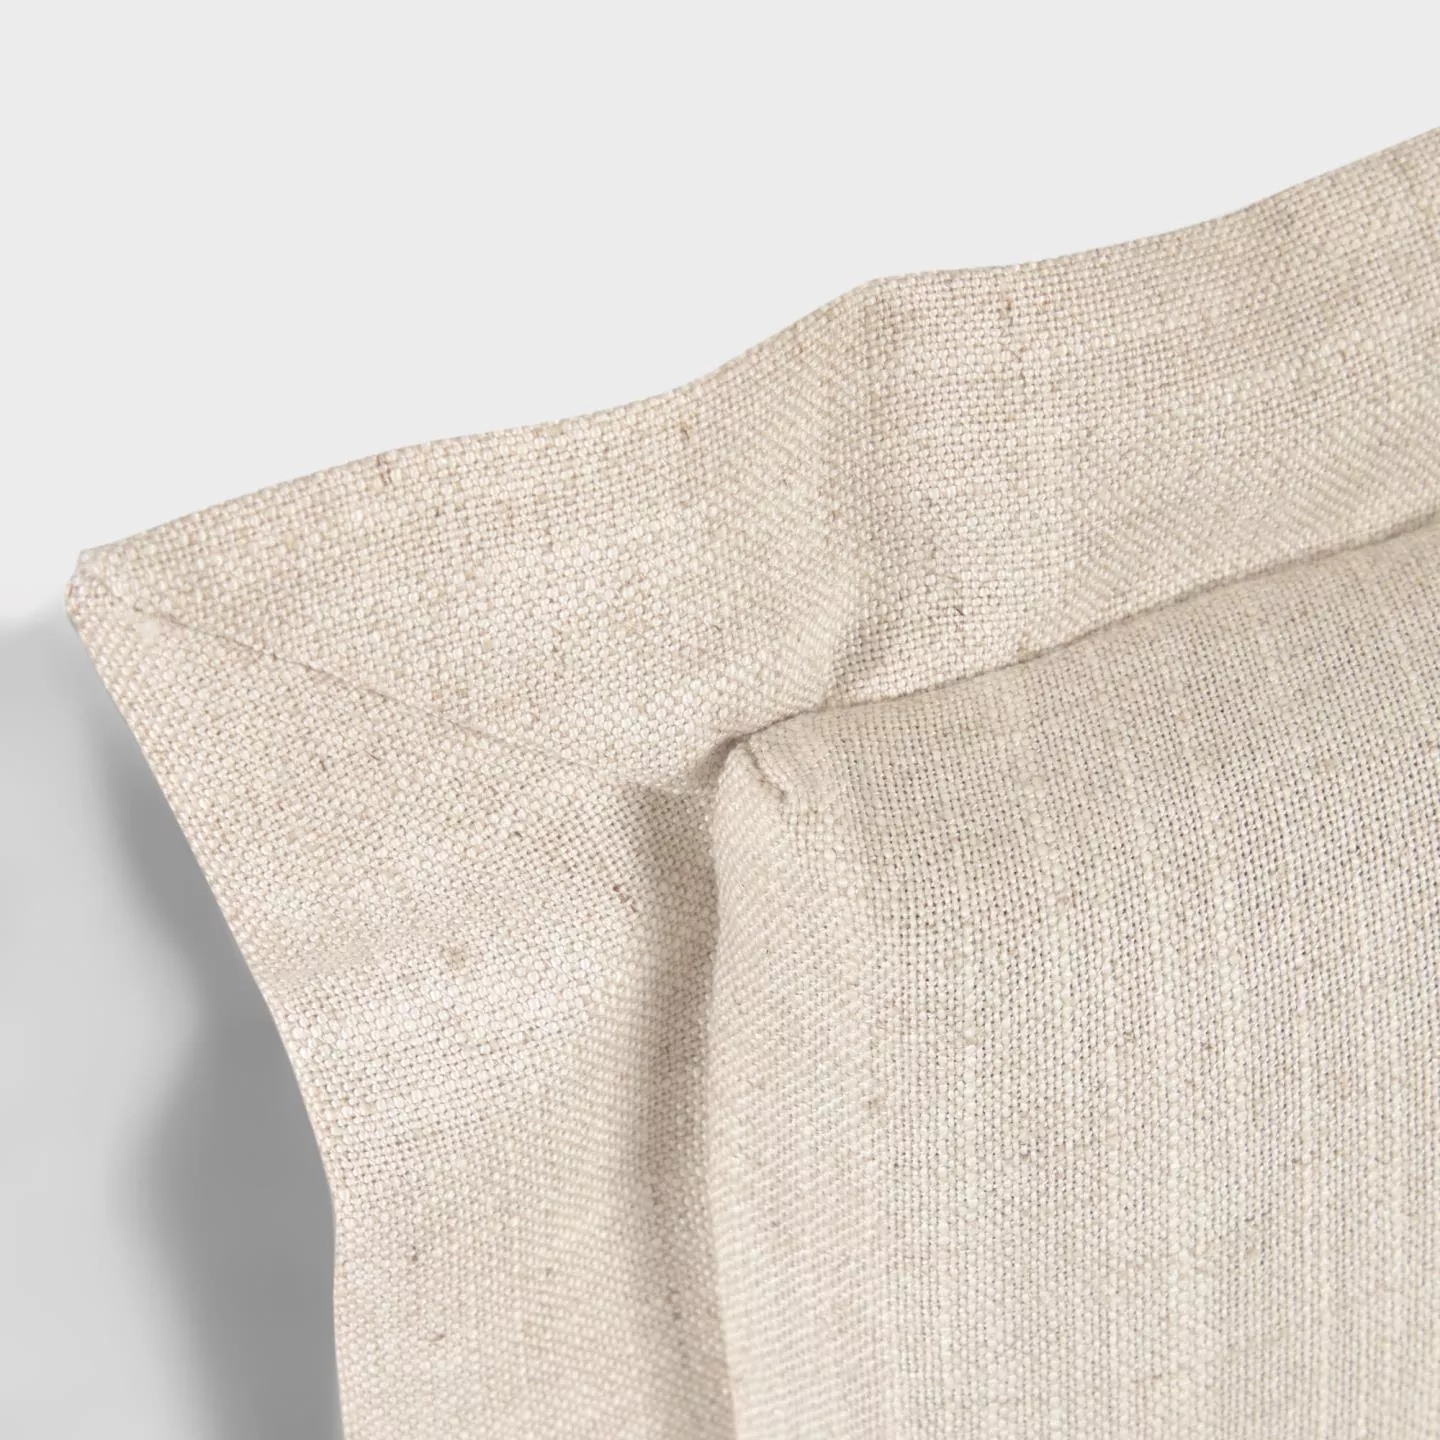 Изголовье La Forma лен белого цвета Tanit со съемным чехлом 166 x 106 см